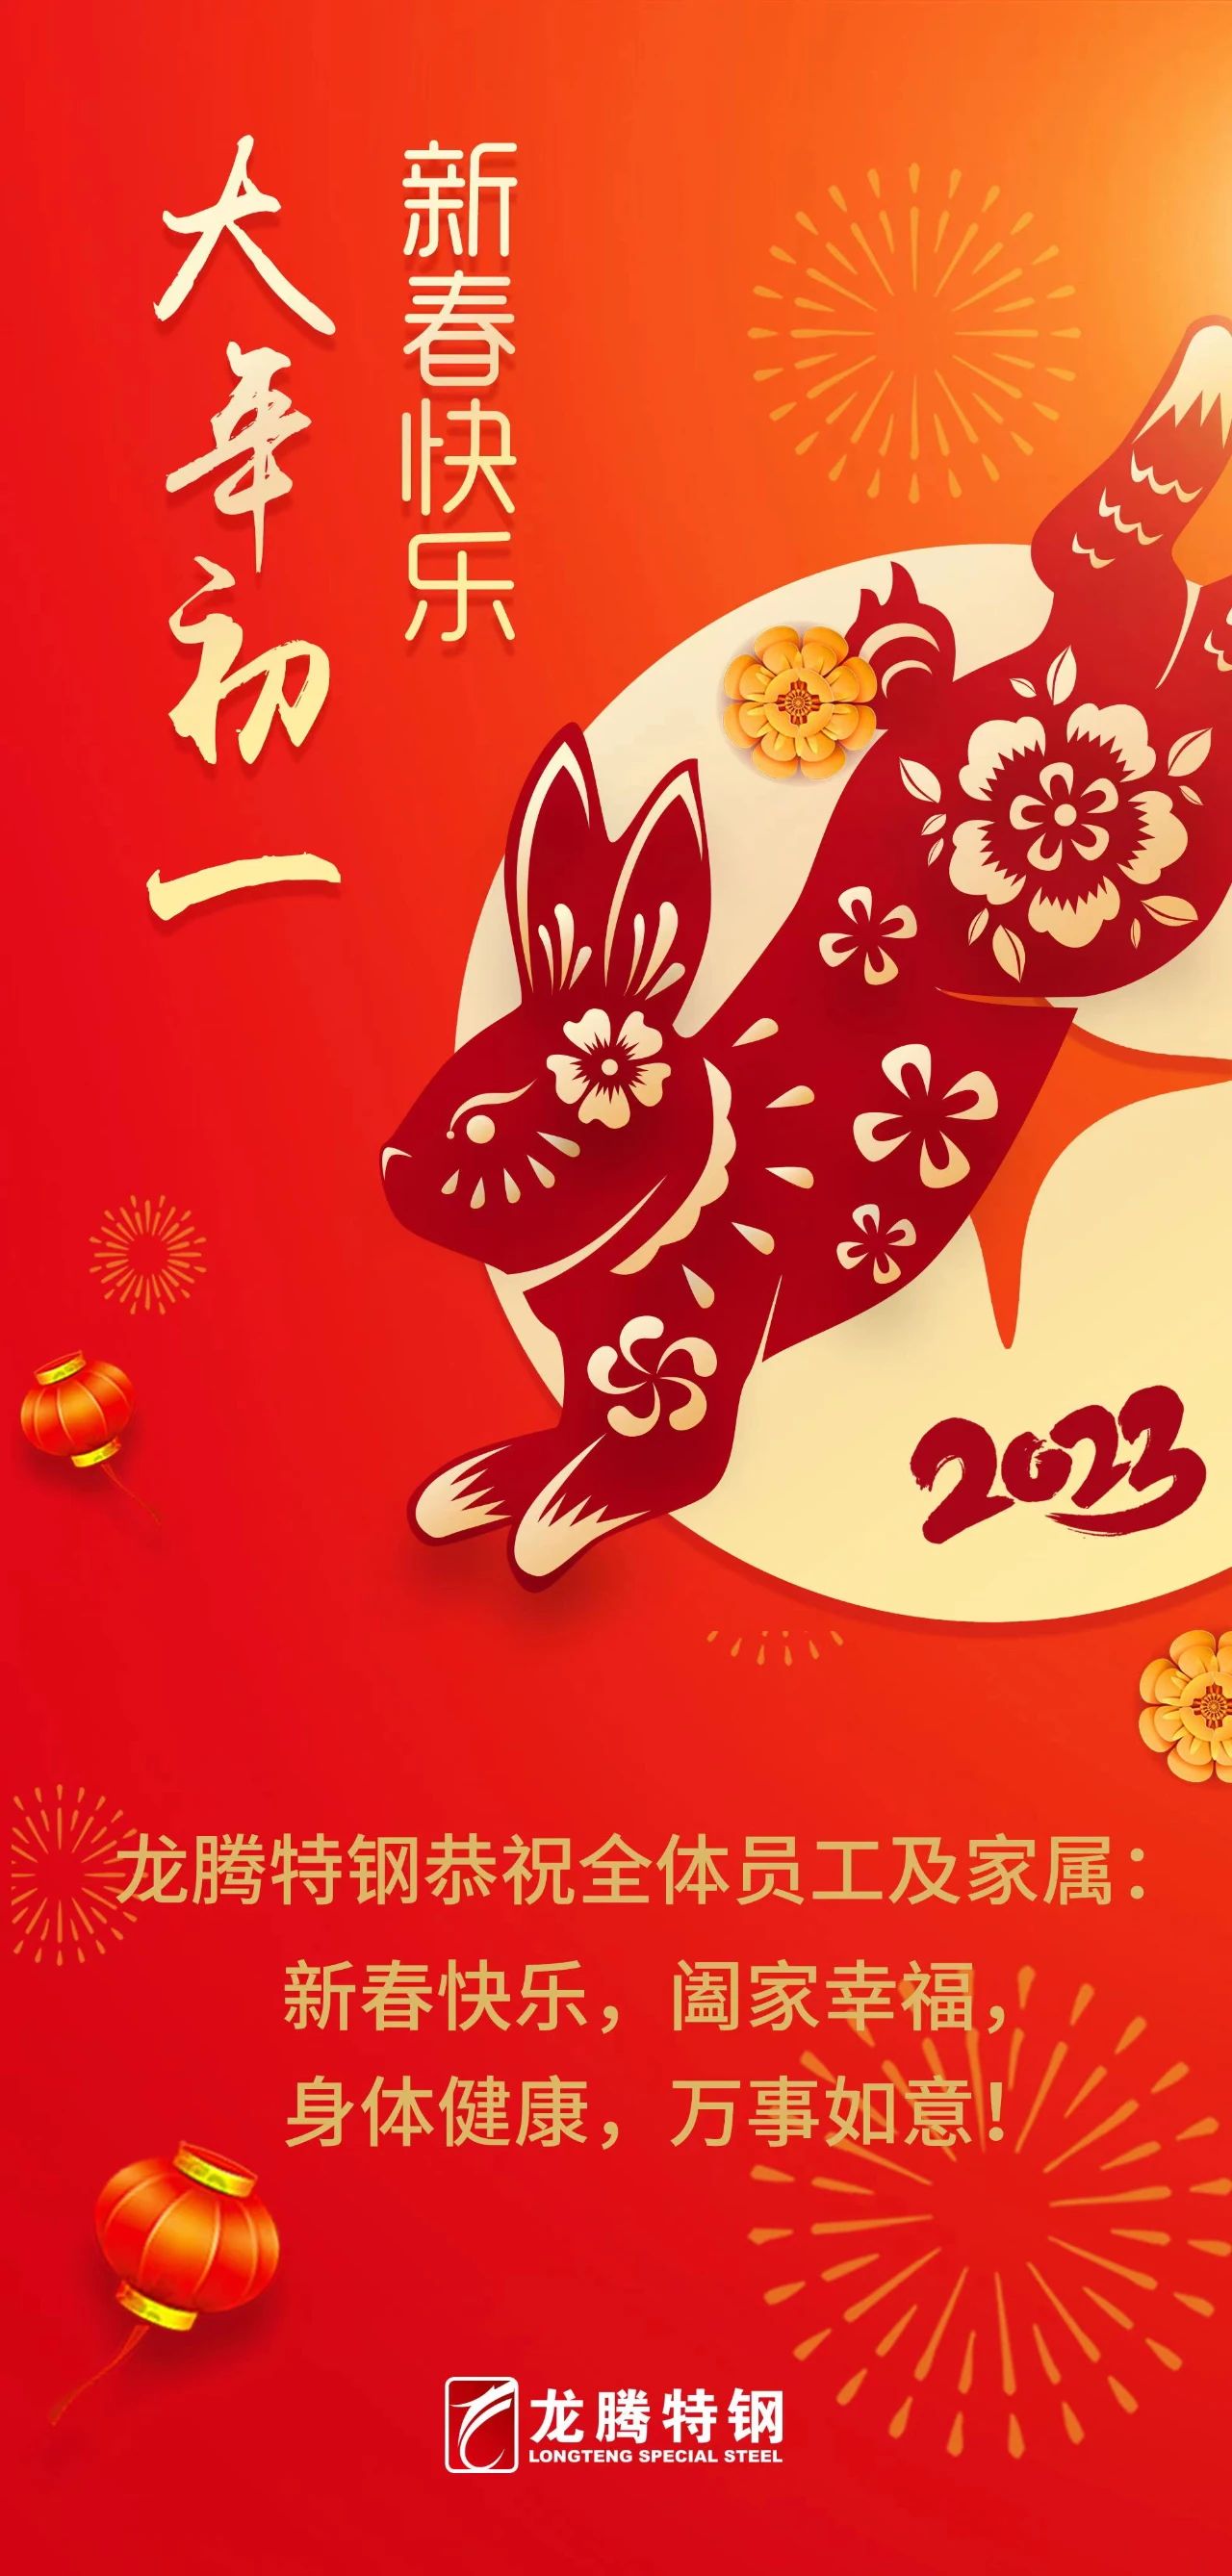 龙腾特钢恭祝全体员工新春快乐！